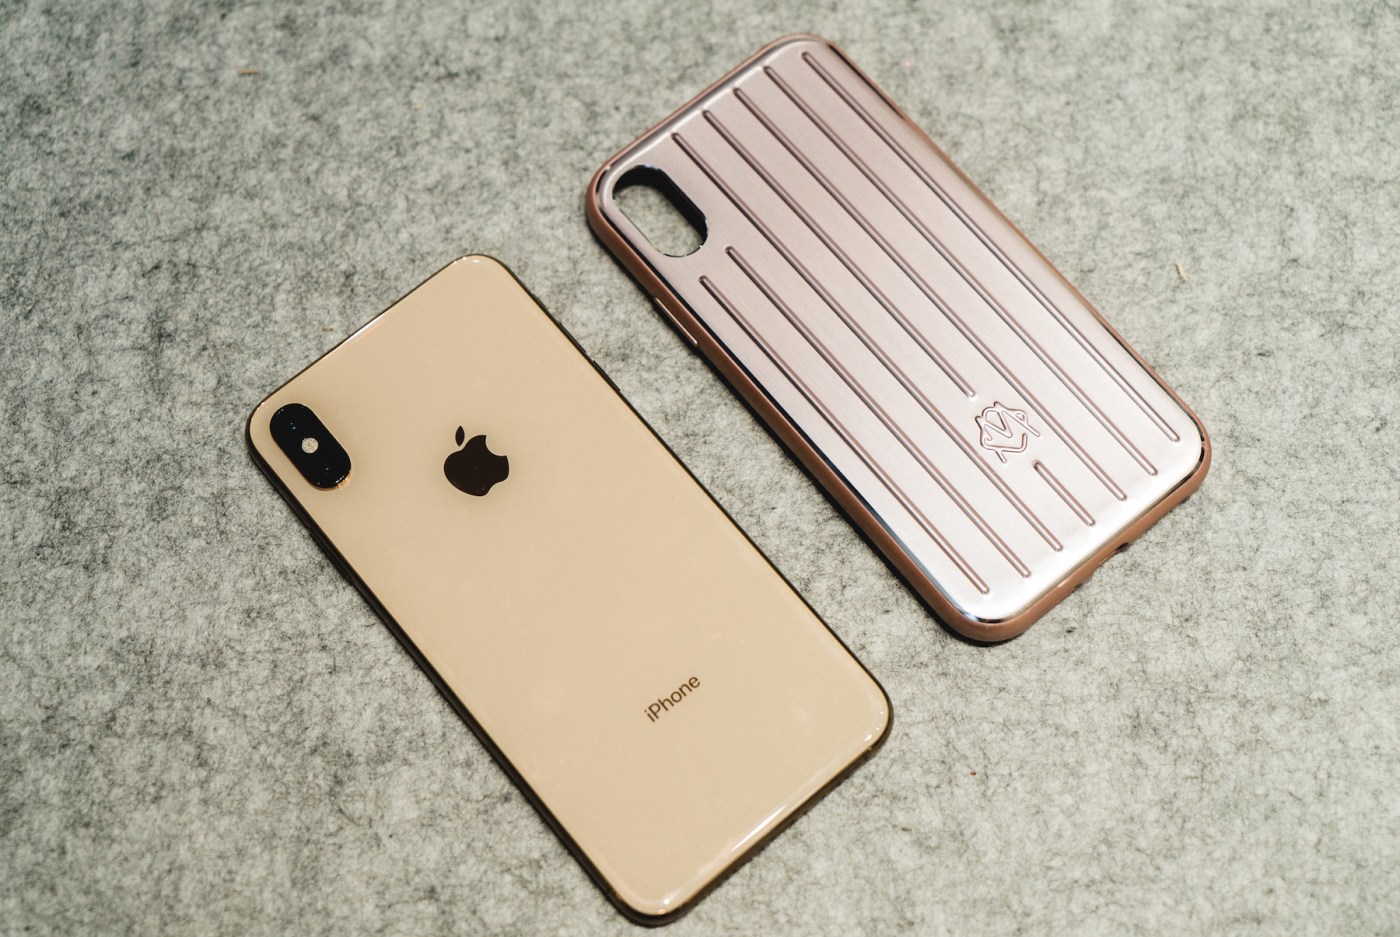 近赏 RIMOWA 最新铝制 iPhone Case